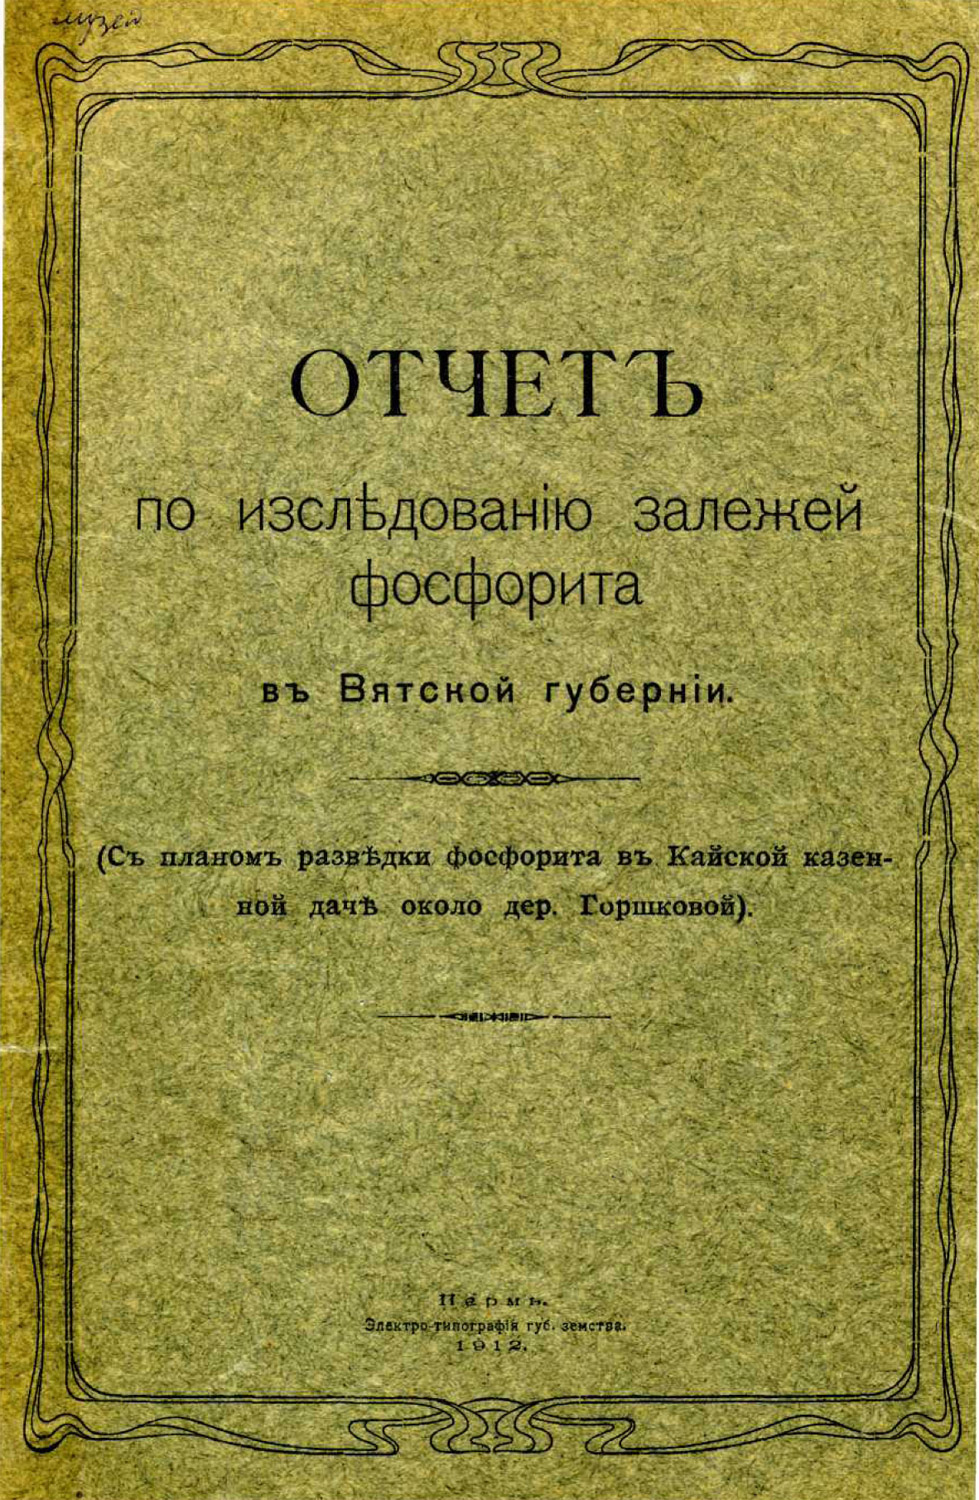 1912 г. Чернов А. А. Отчет по исследованию залежей фосфорита в Вятской губернии